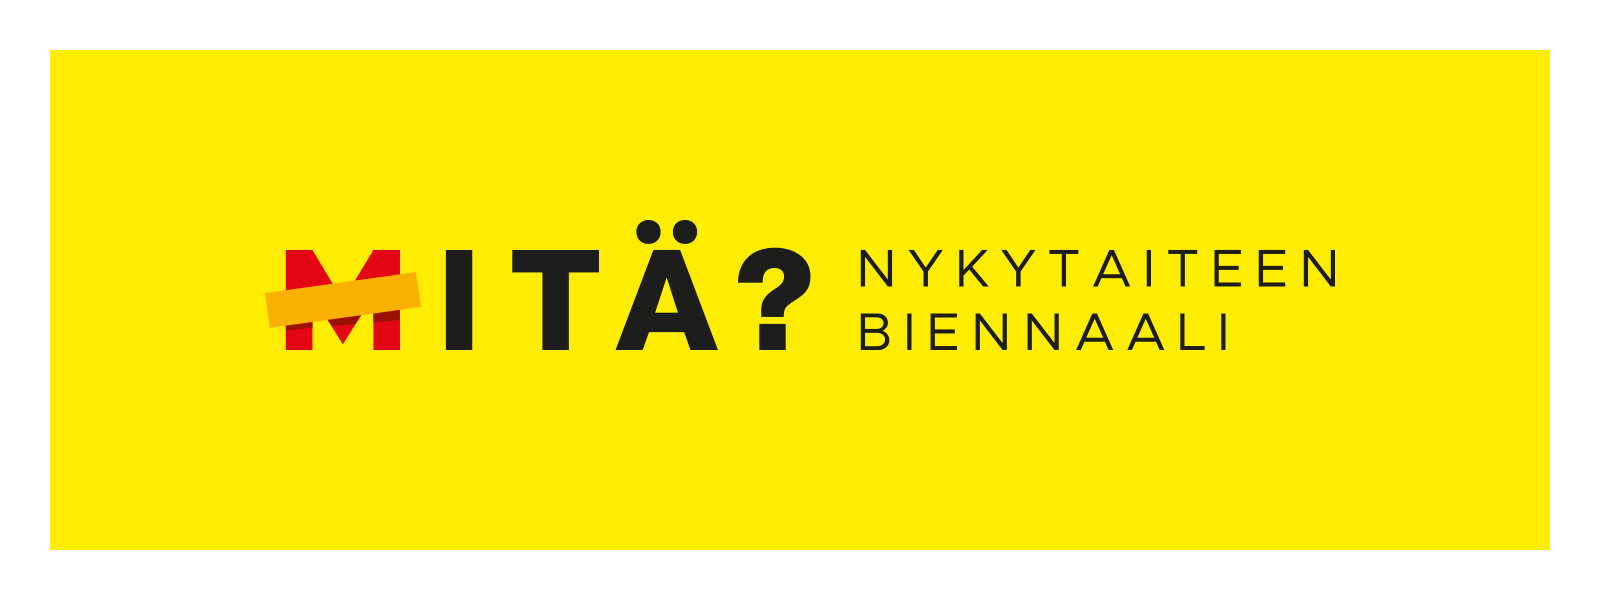 Mitä biennaalin logo